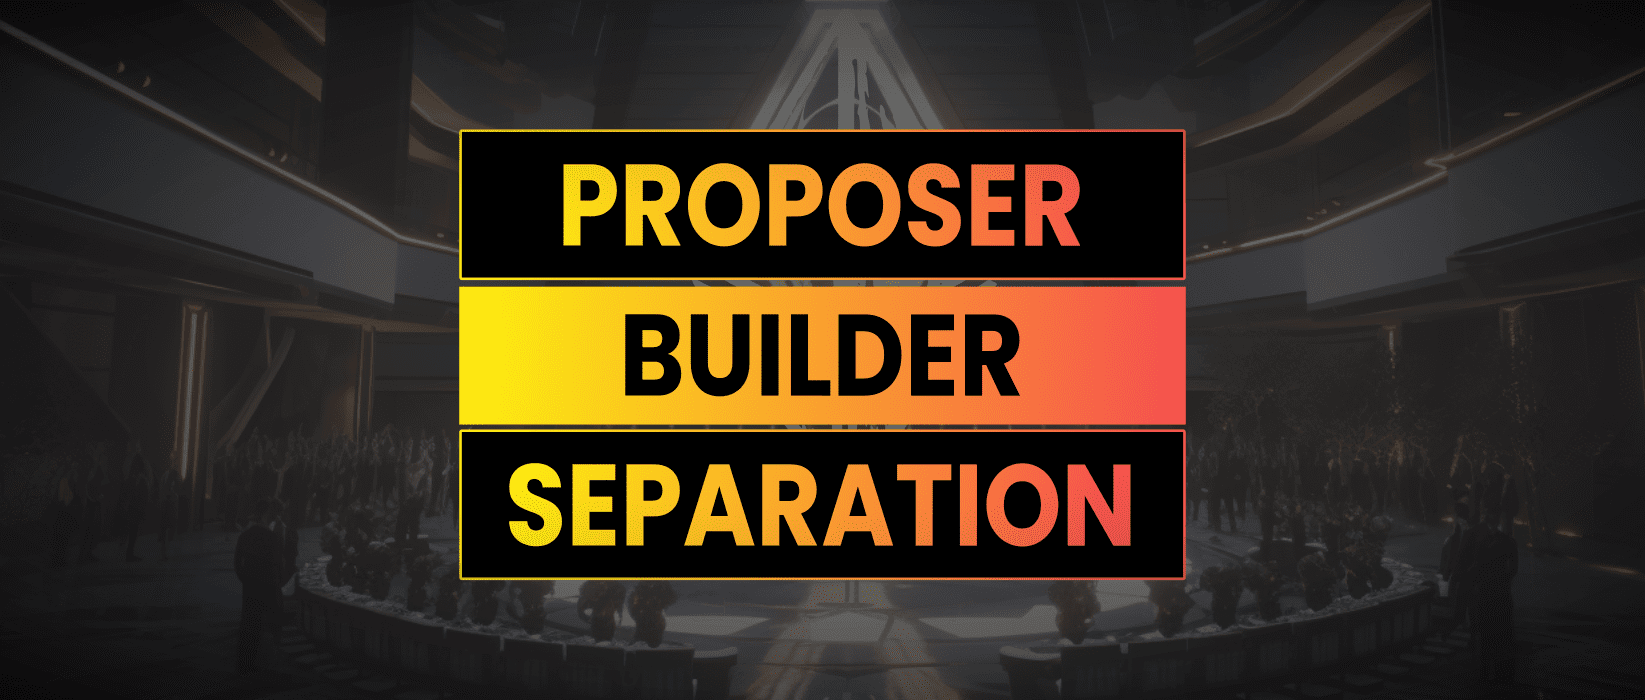 Proposer Builder Separation